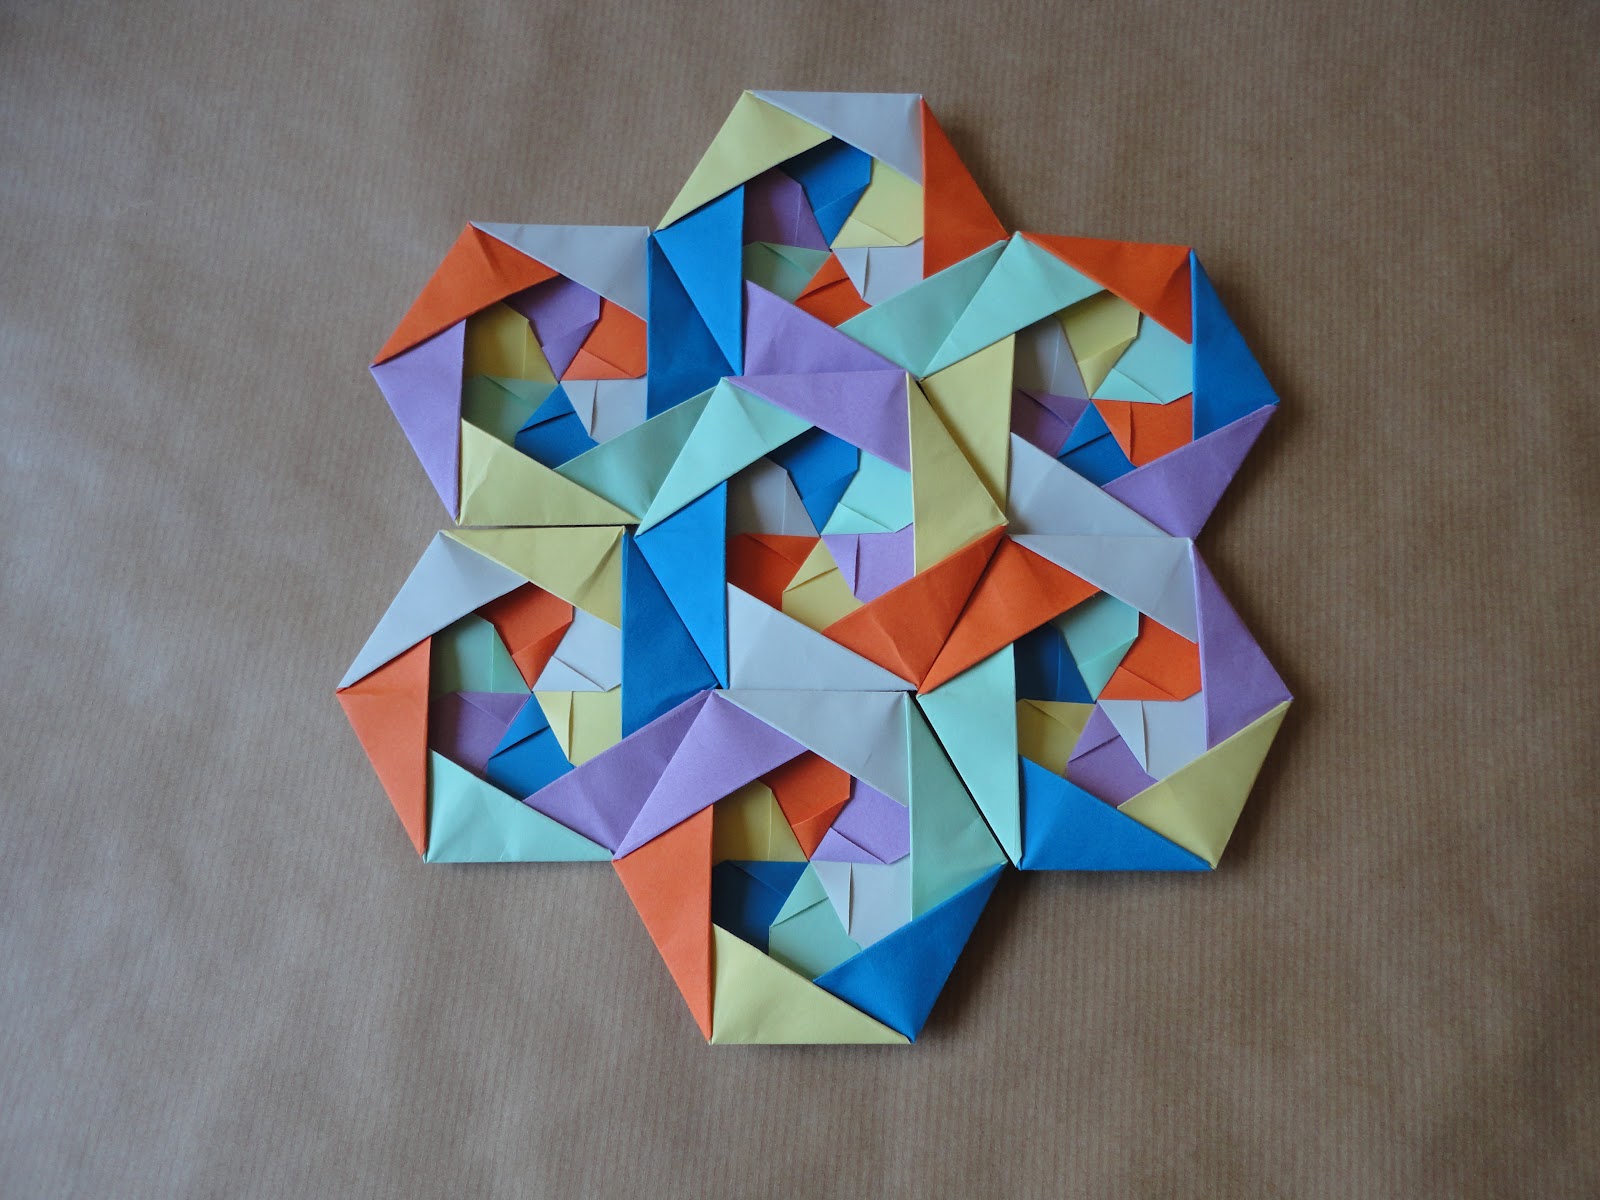 Plegándome: Puzzle de Hexágonos de Belén Garrido